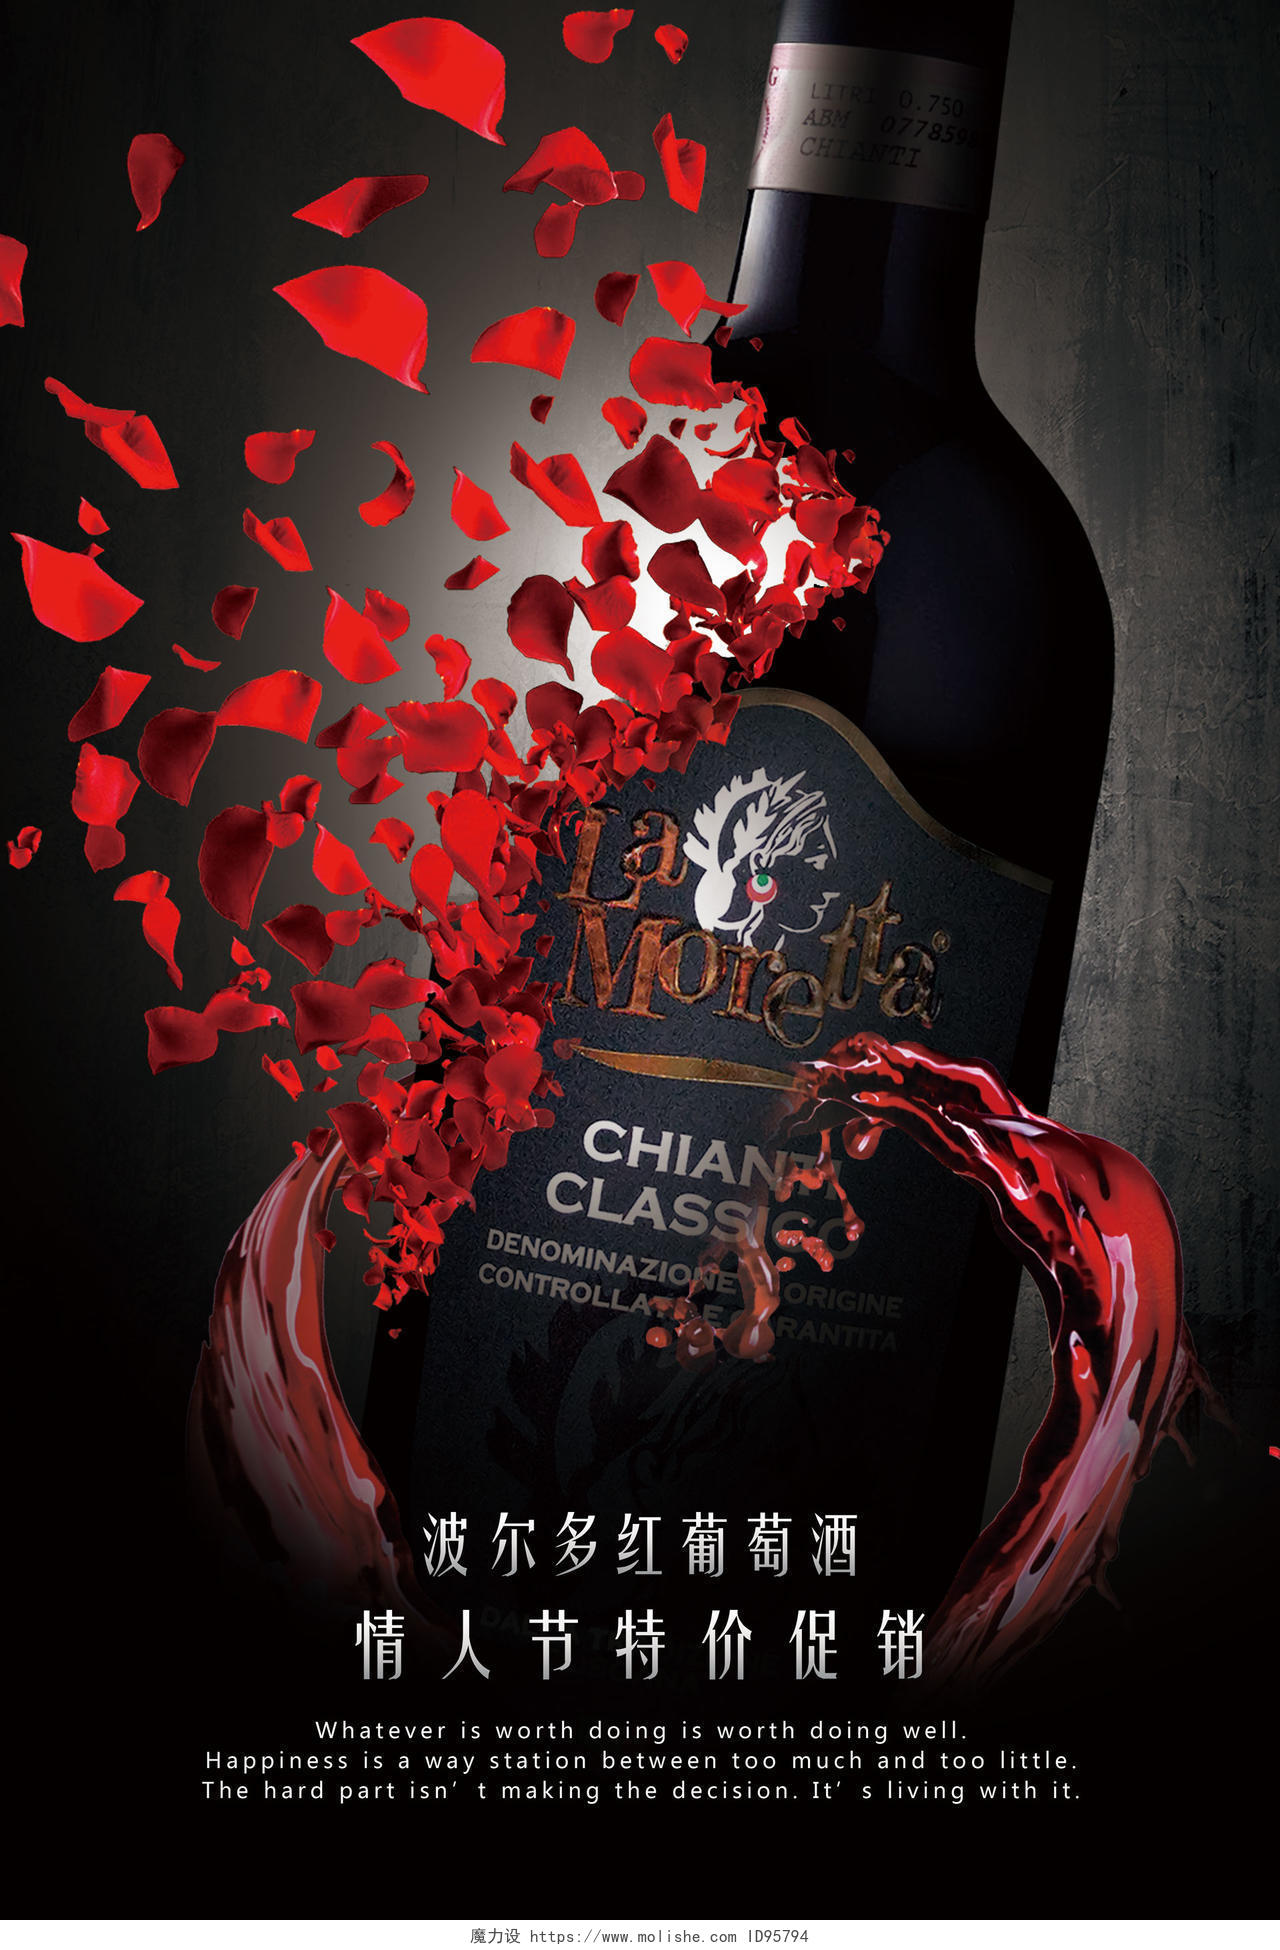 红酒酒水促销宣传广告玫瑰花瓣破碎酒瓶大气海报